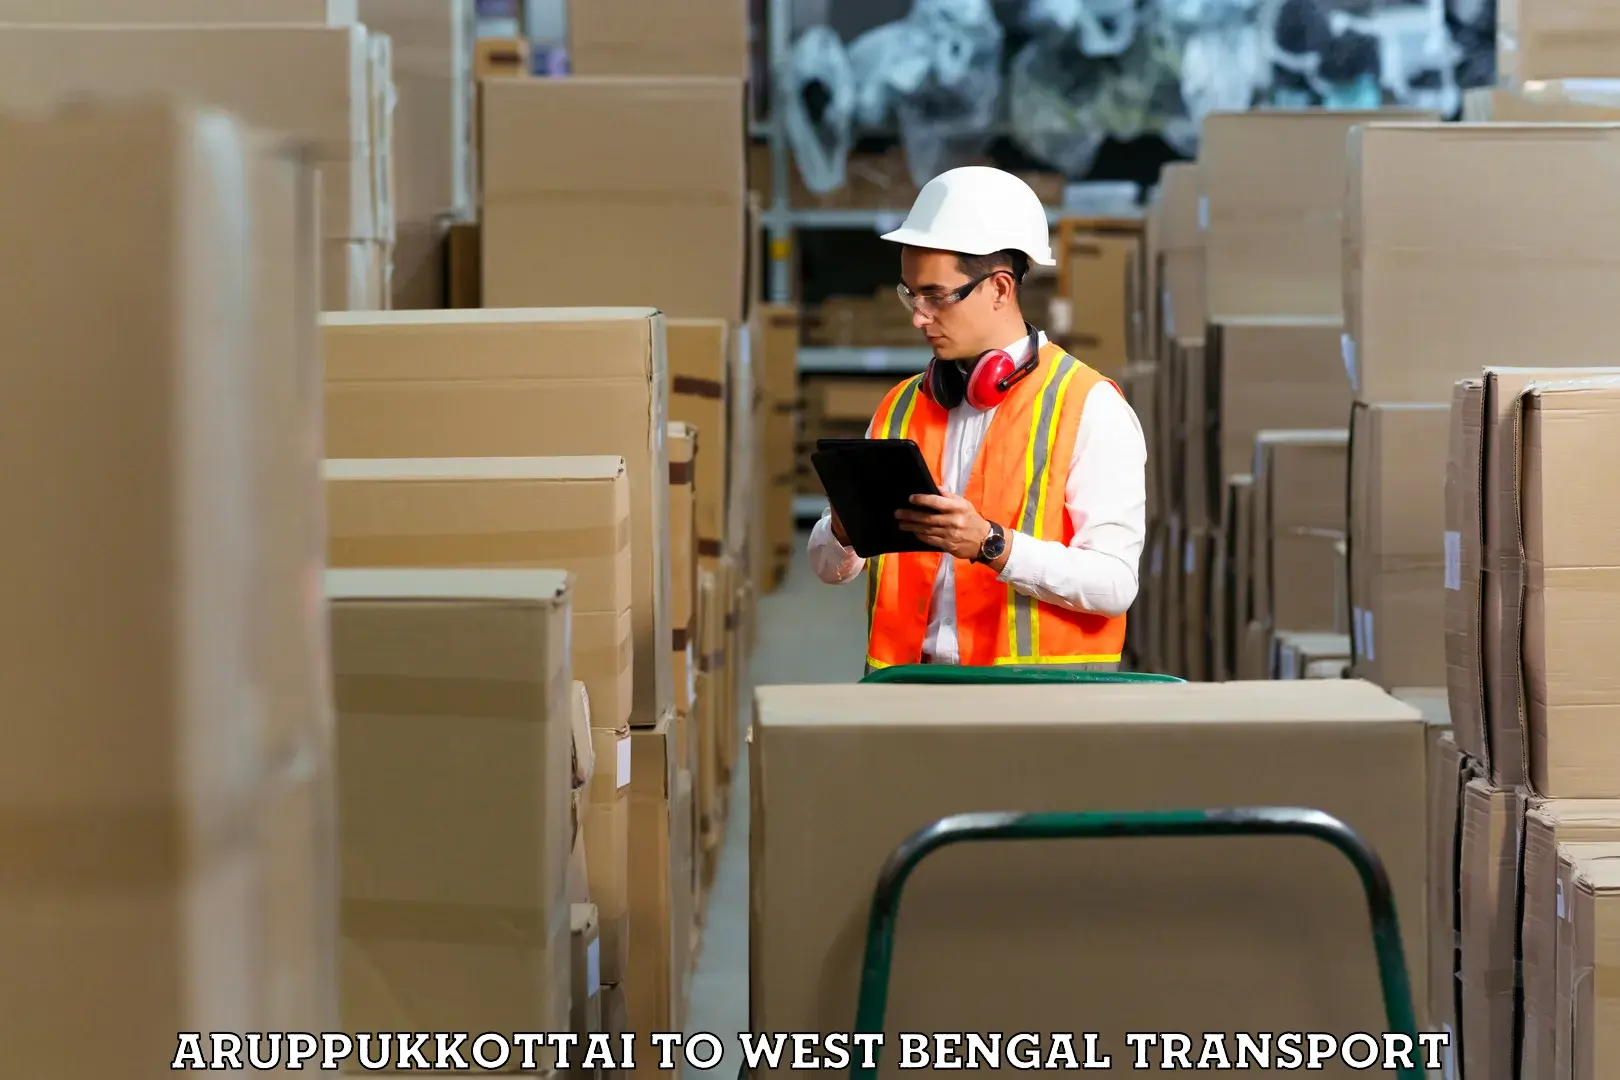 Package delivery services Aruppukkottai to Binnaguri